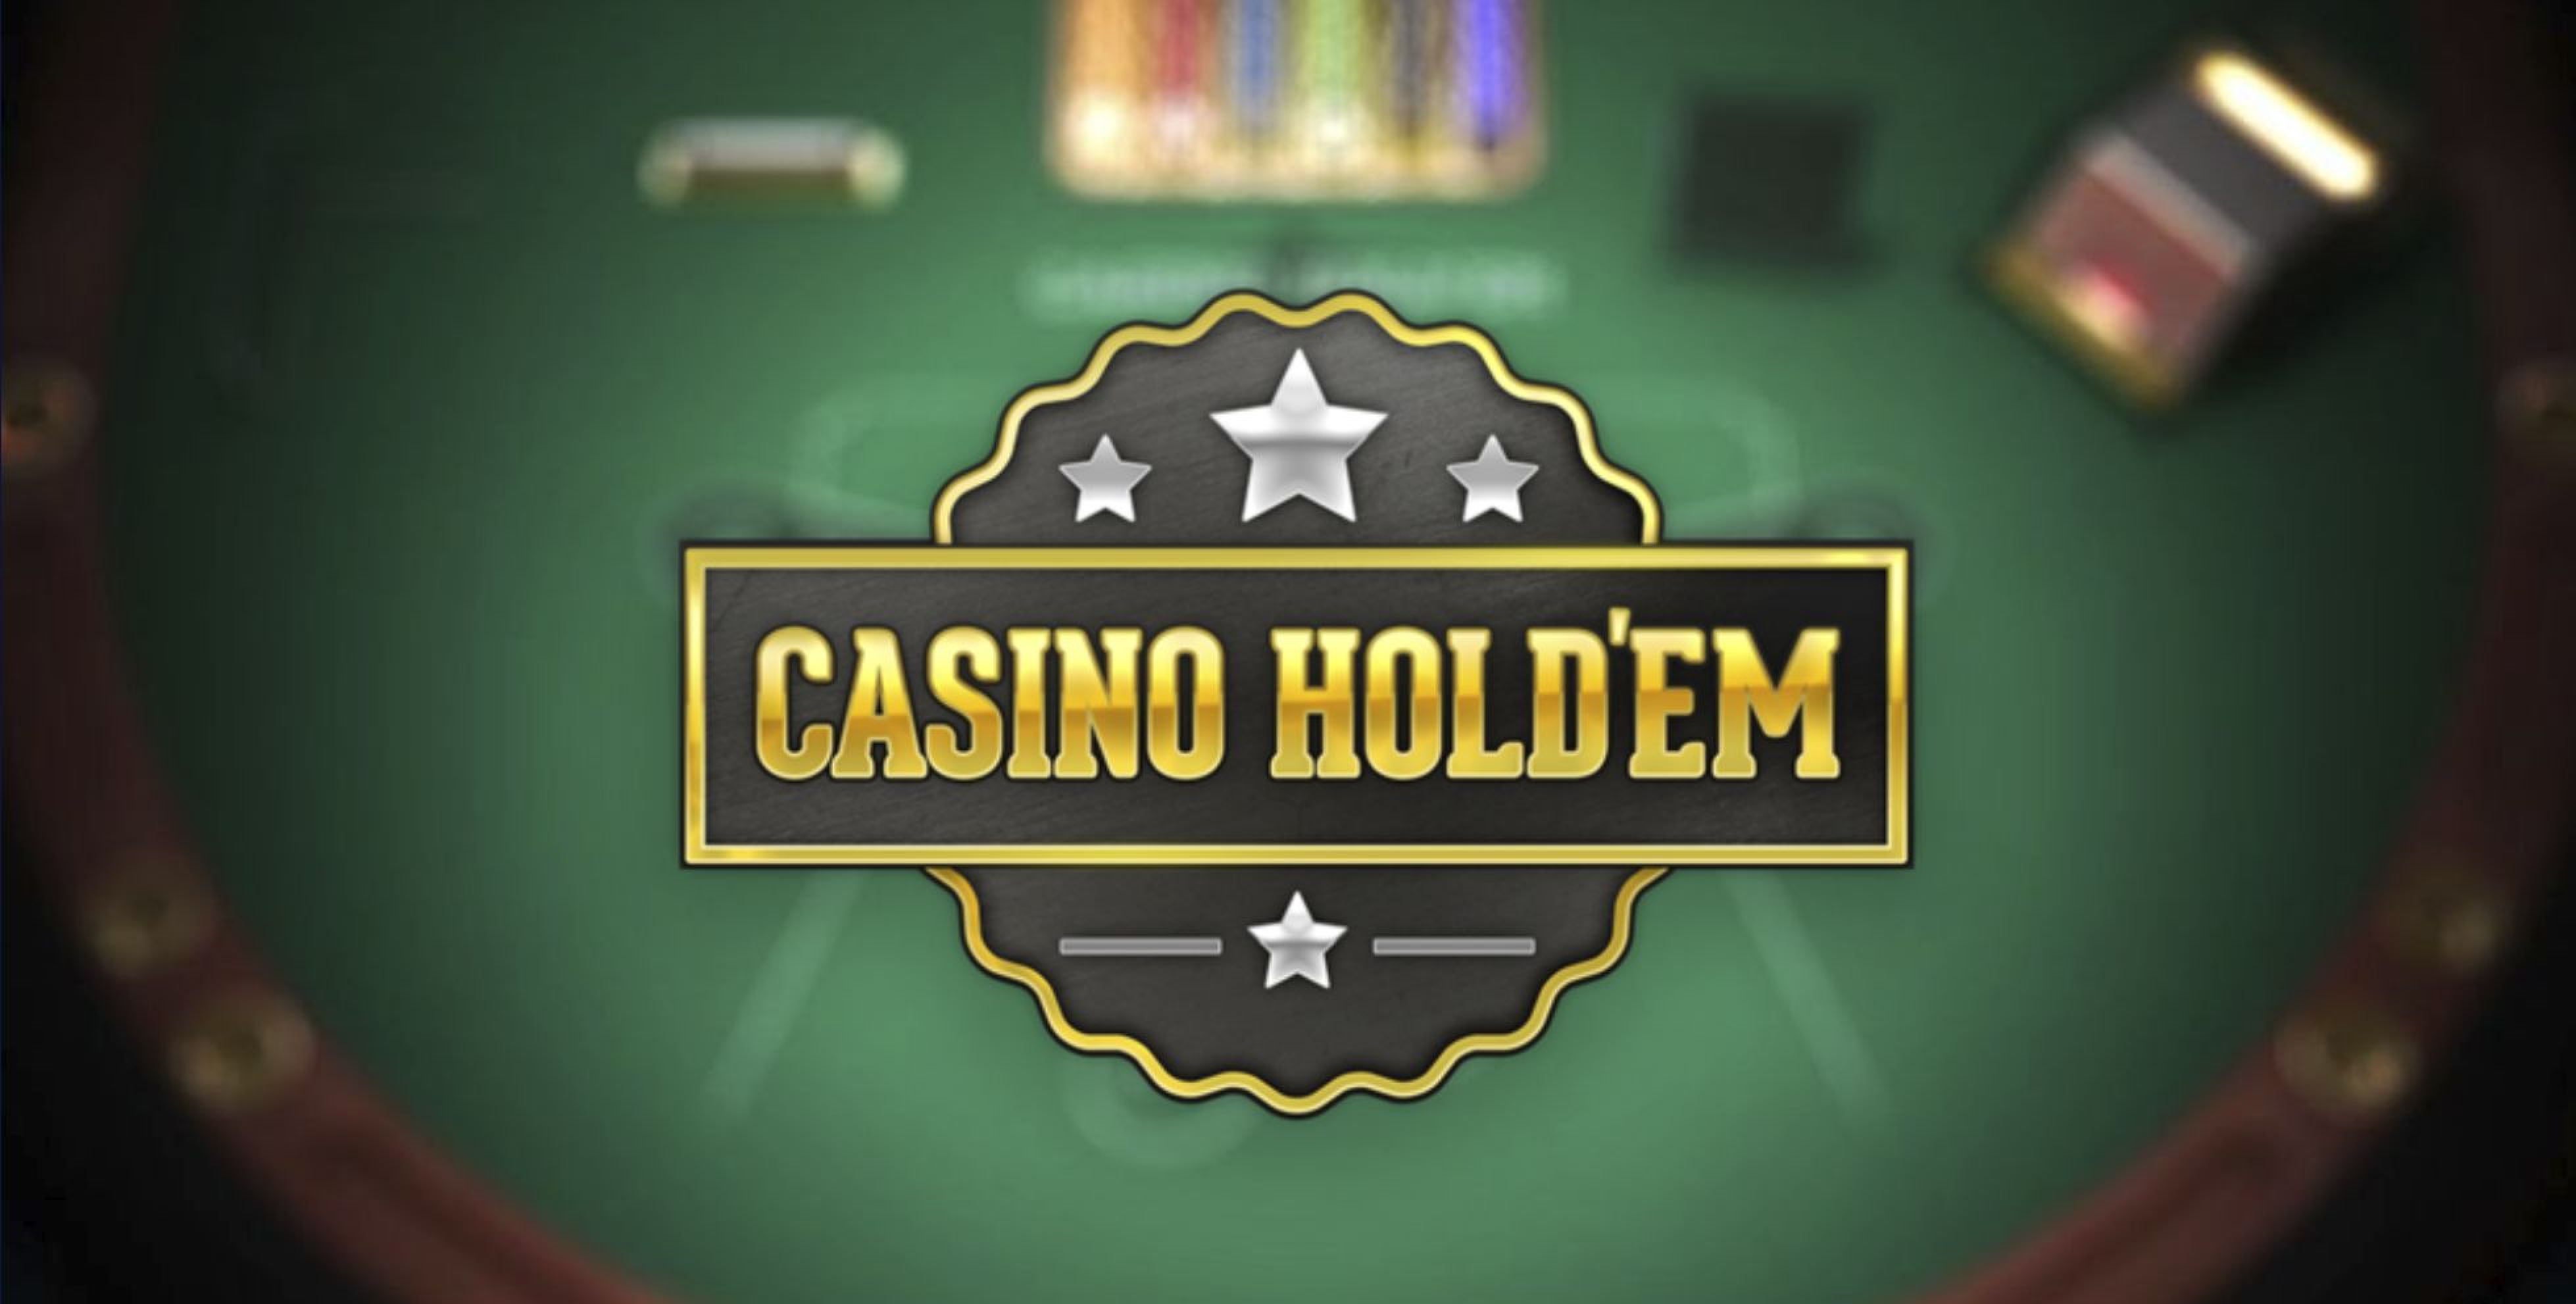 3 Hand Casino Hold'Em